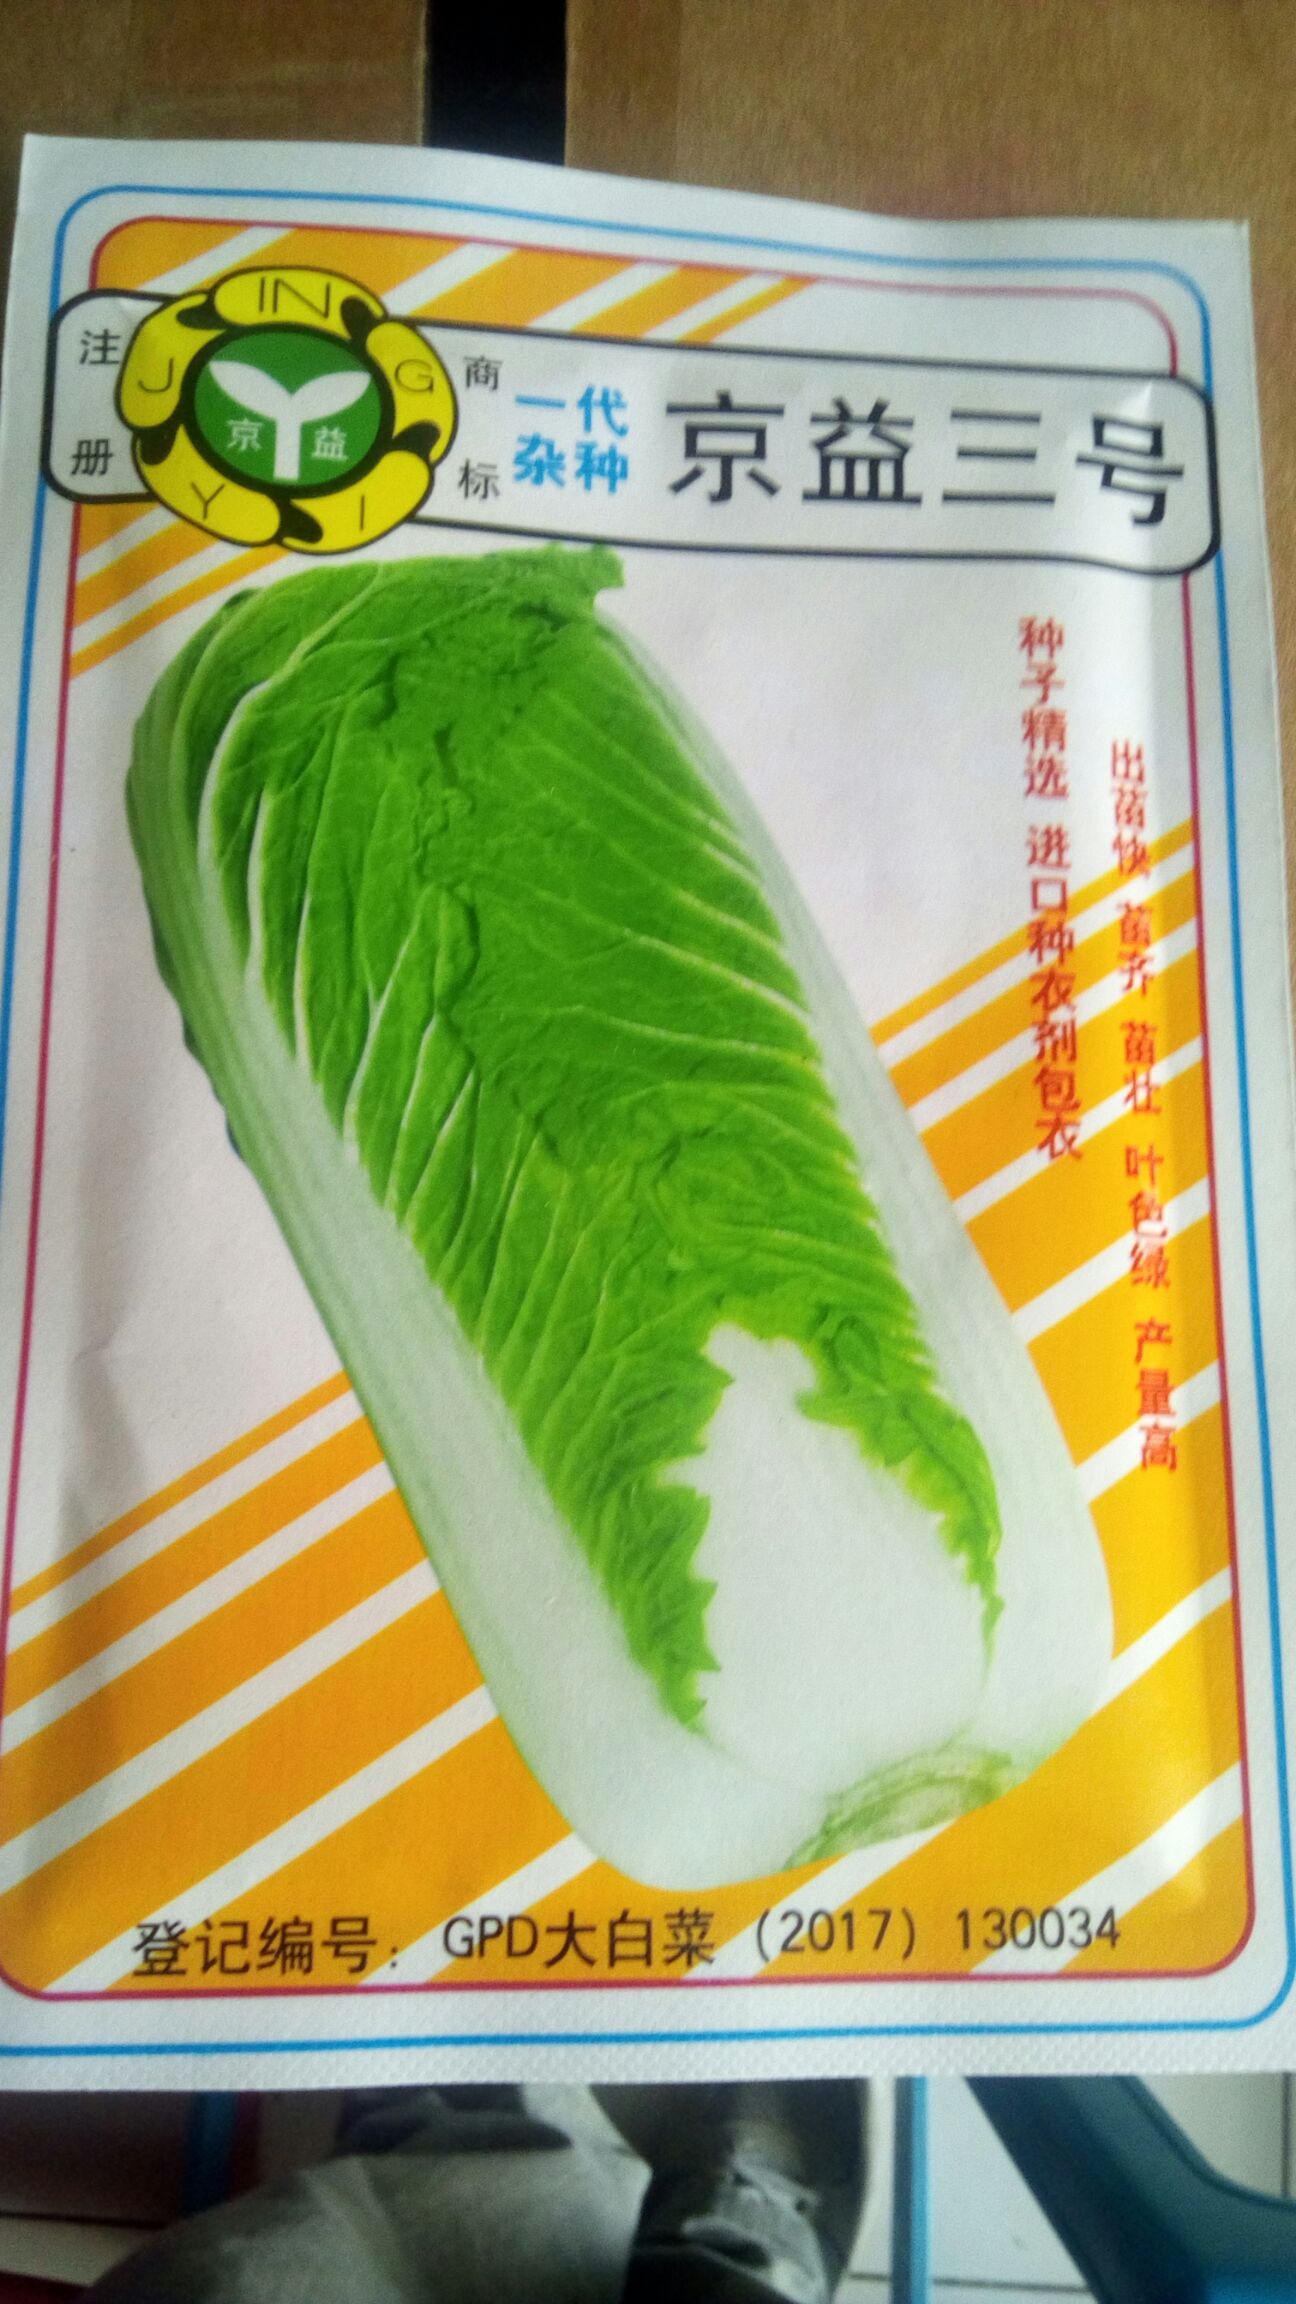 [大白菜种子批发] 白菜种子京益三号一代杂交每袋20克价格15元/袋